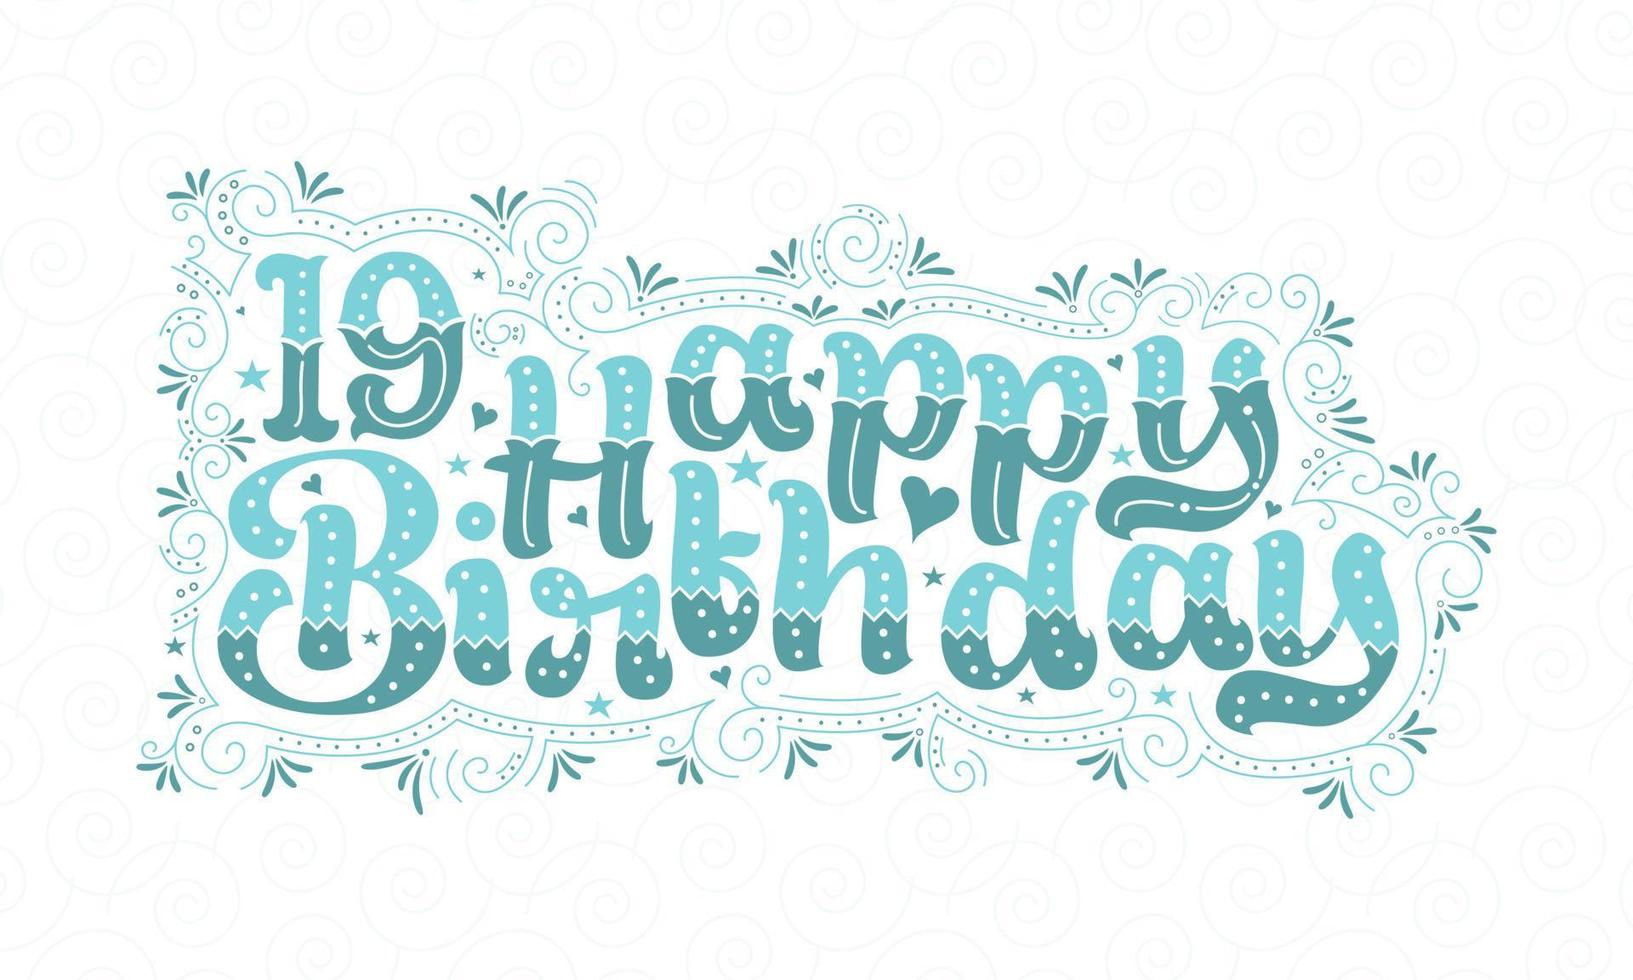 19e gelukkige verjaardag belettering, 19 jaar verjaardag mooi typografieontwerp met aqua stippen, lijnen en bladeren. vector